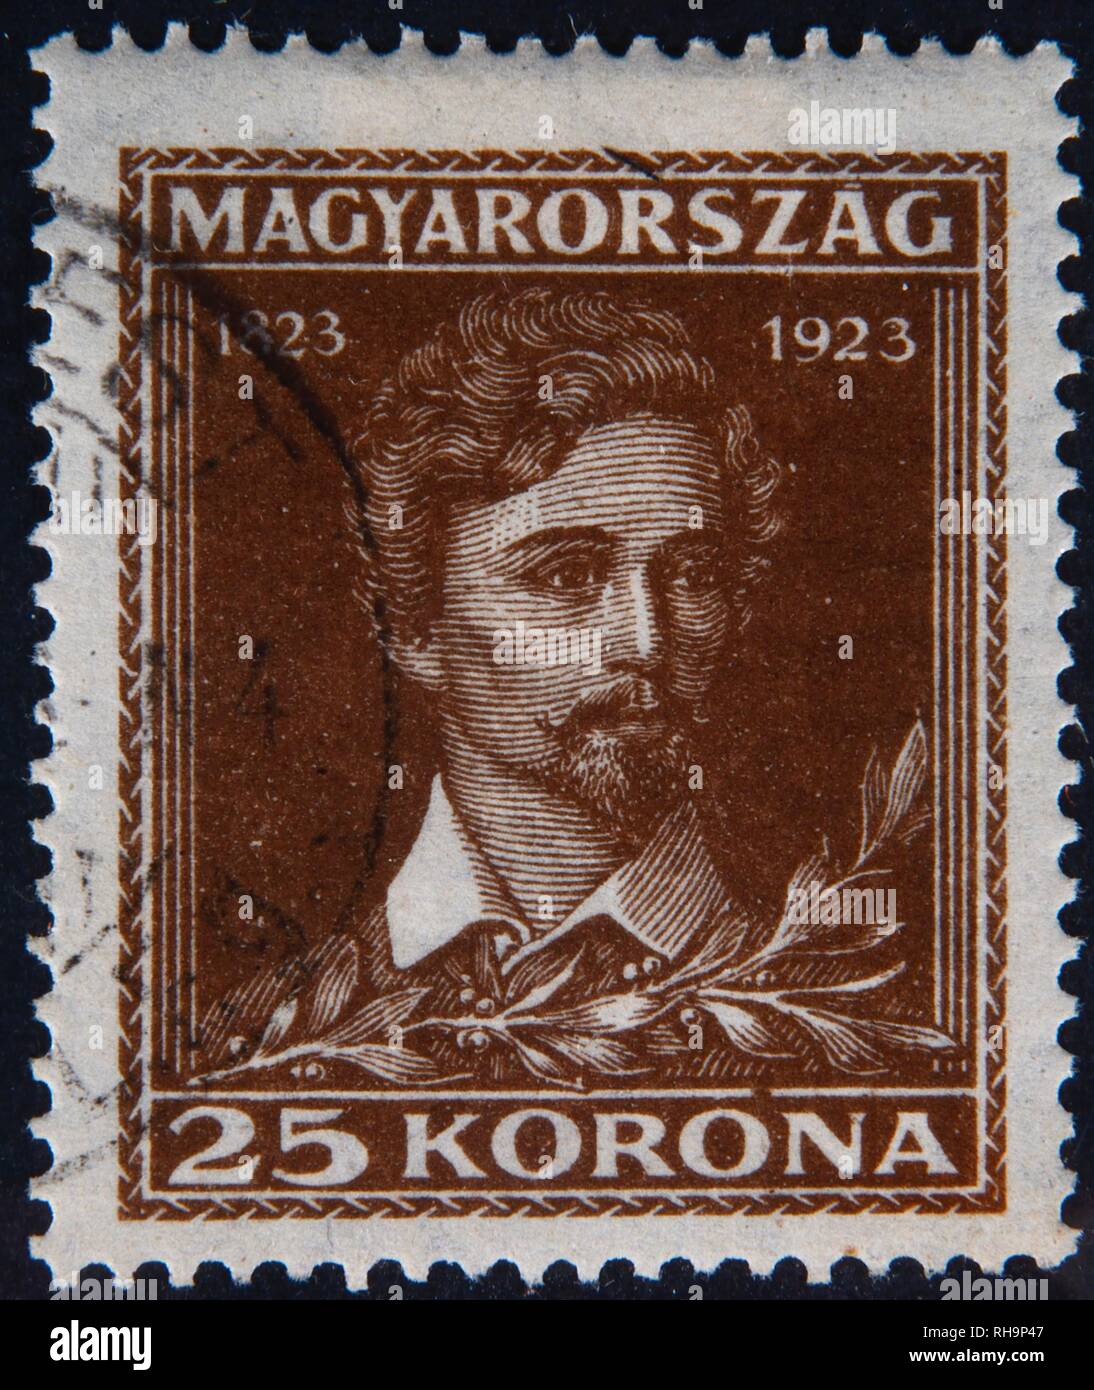 Sándor Petőfi ou Alexander Petrovics, un poète hongrois et héros national, portrait sur un timbre hongrois, Hongrie Banque D'Images